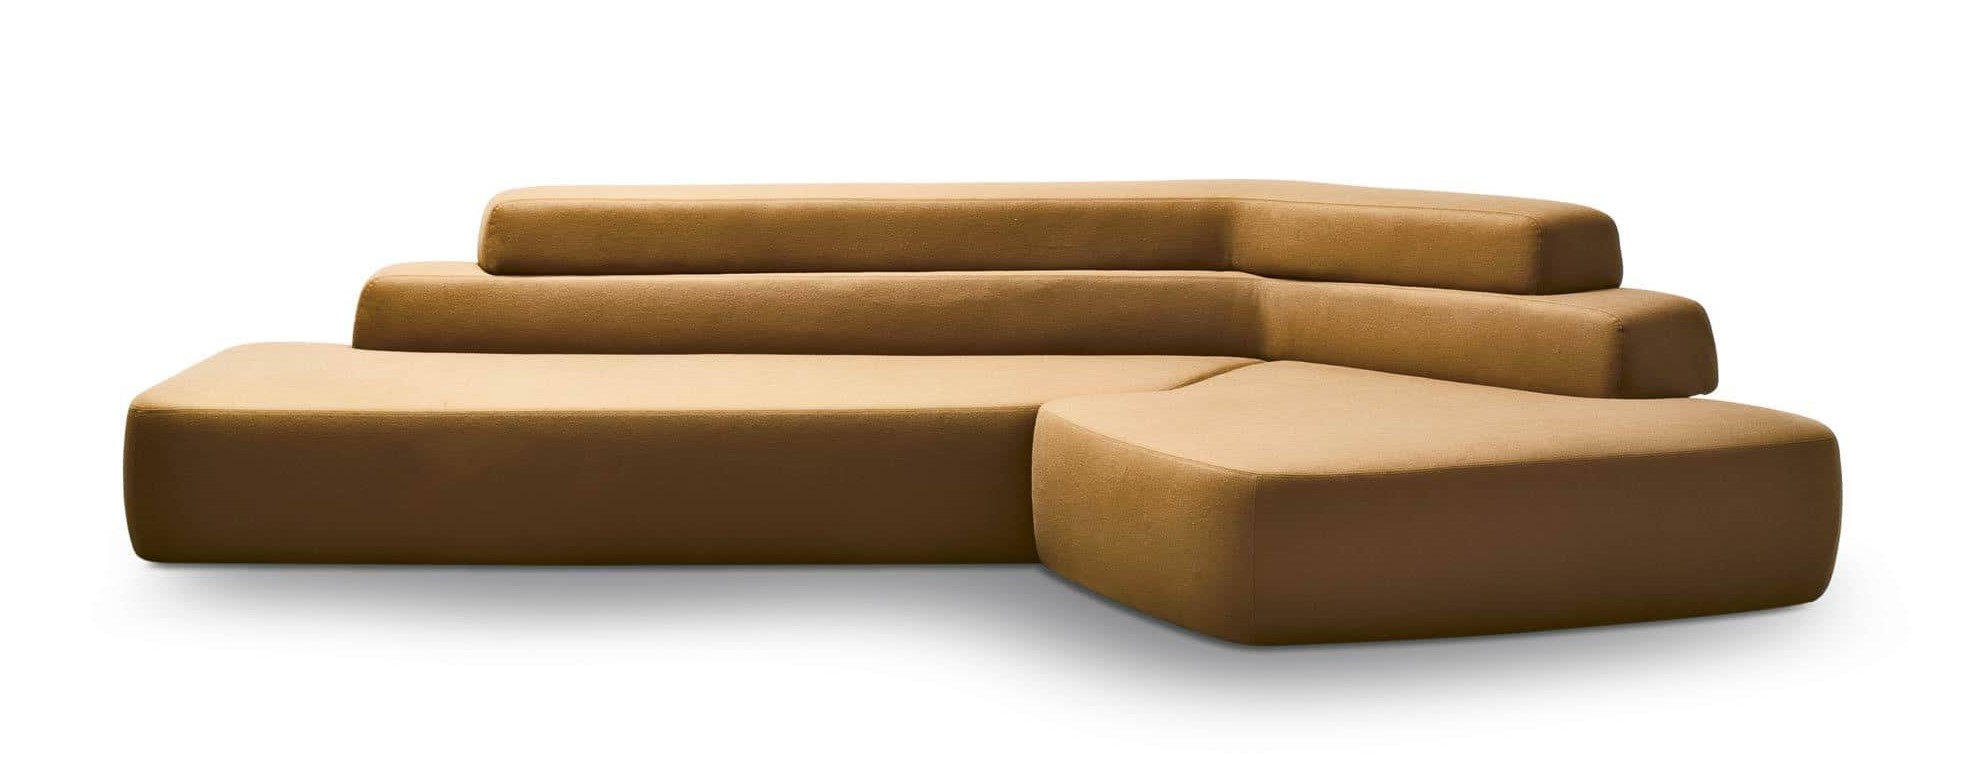 Product Image Rift Sofa